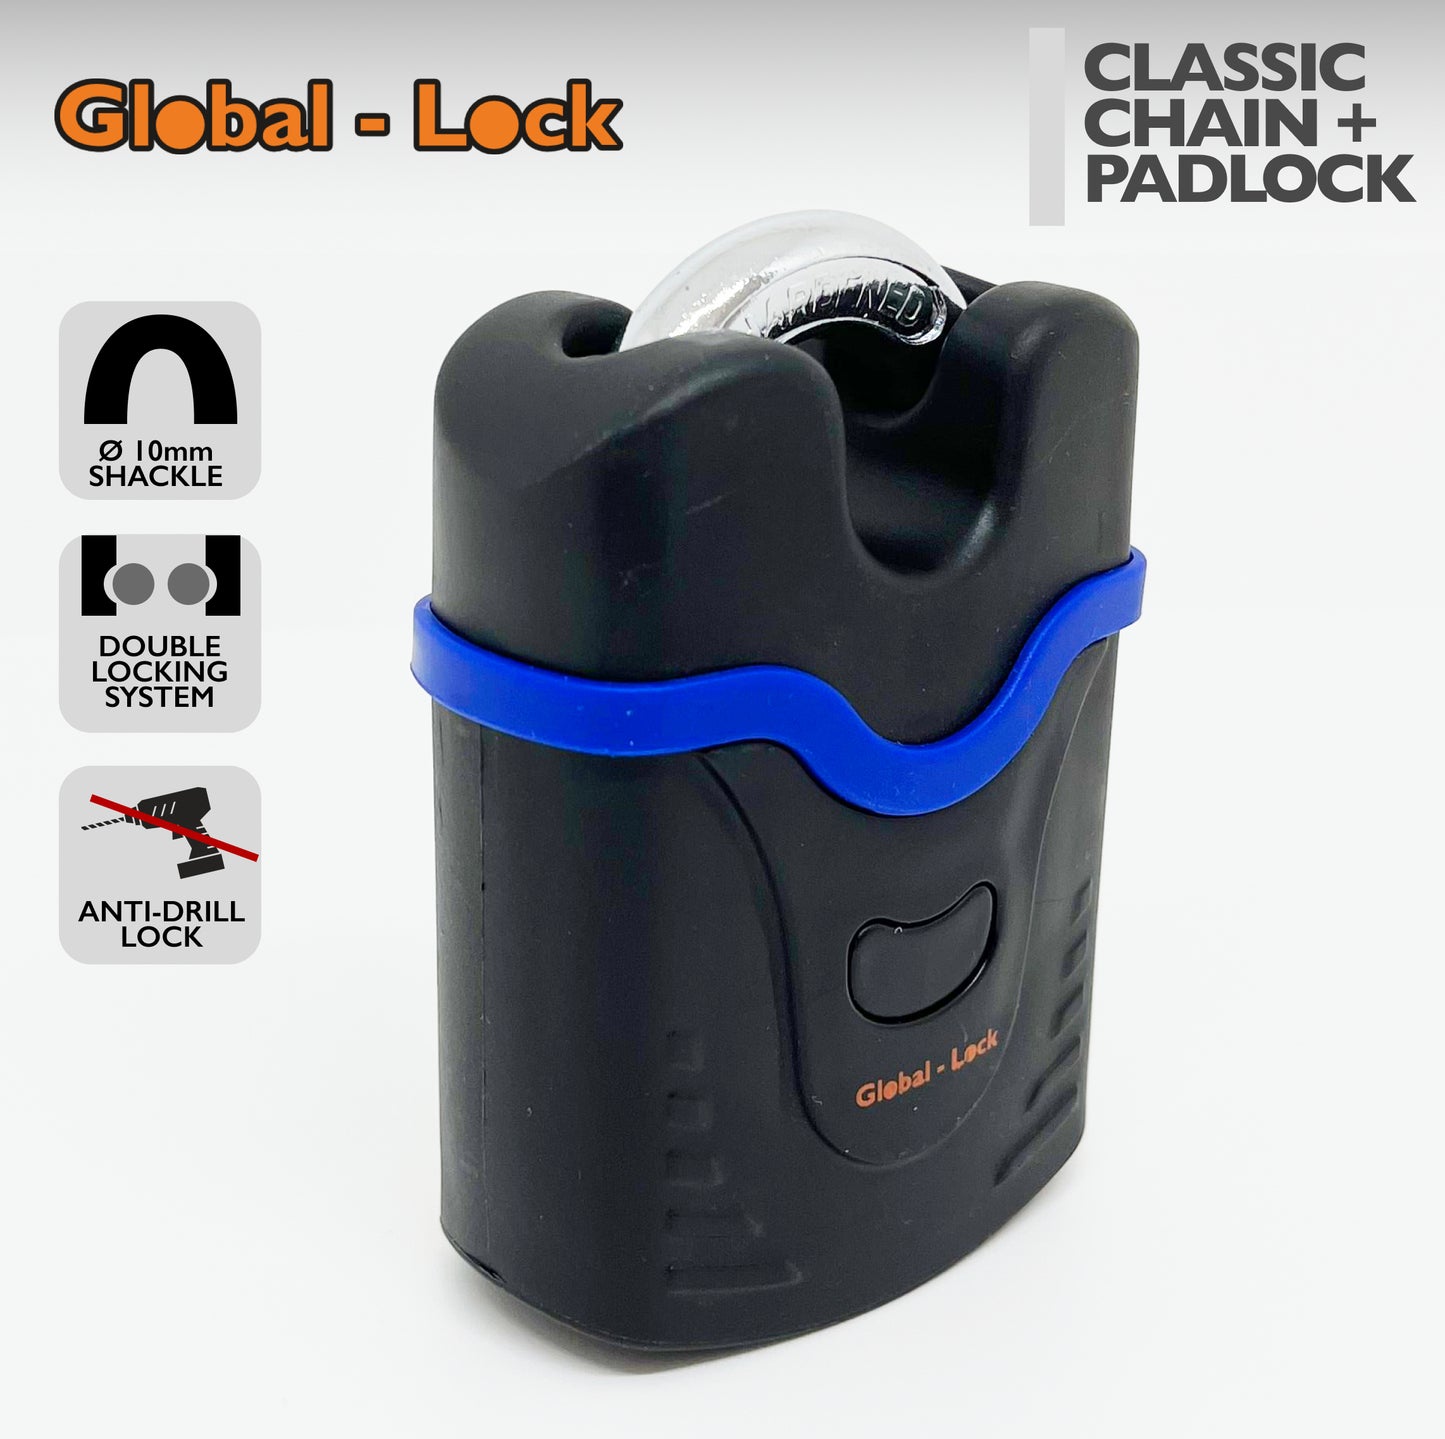 Kit catena + lucchetto Global-Lock CLASSIC